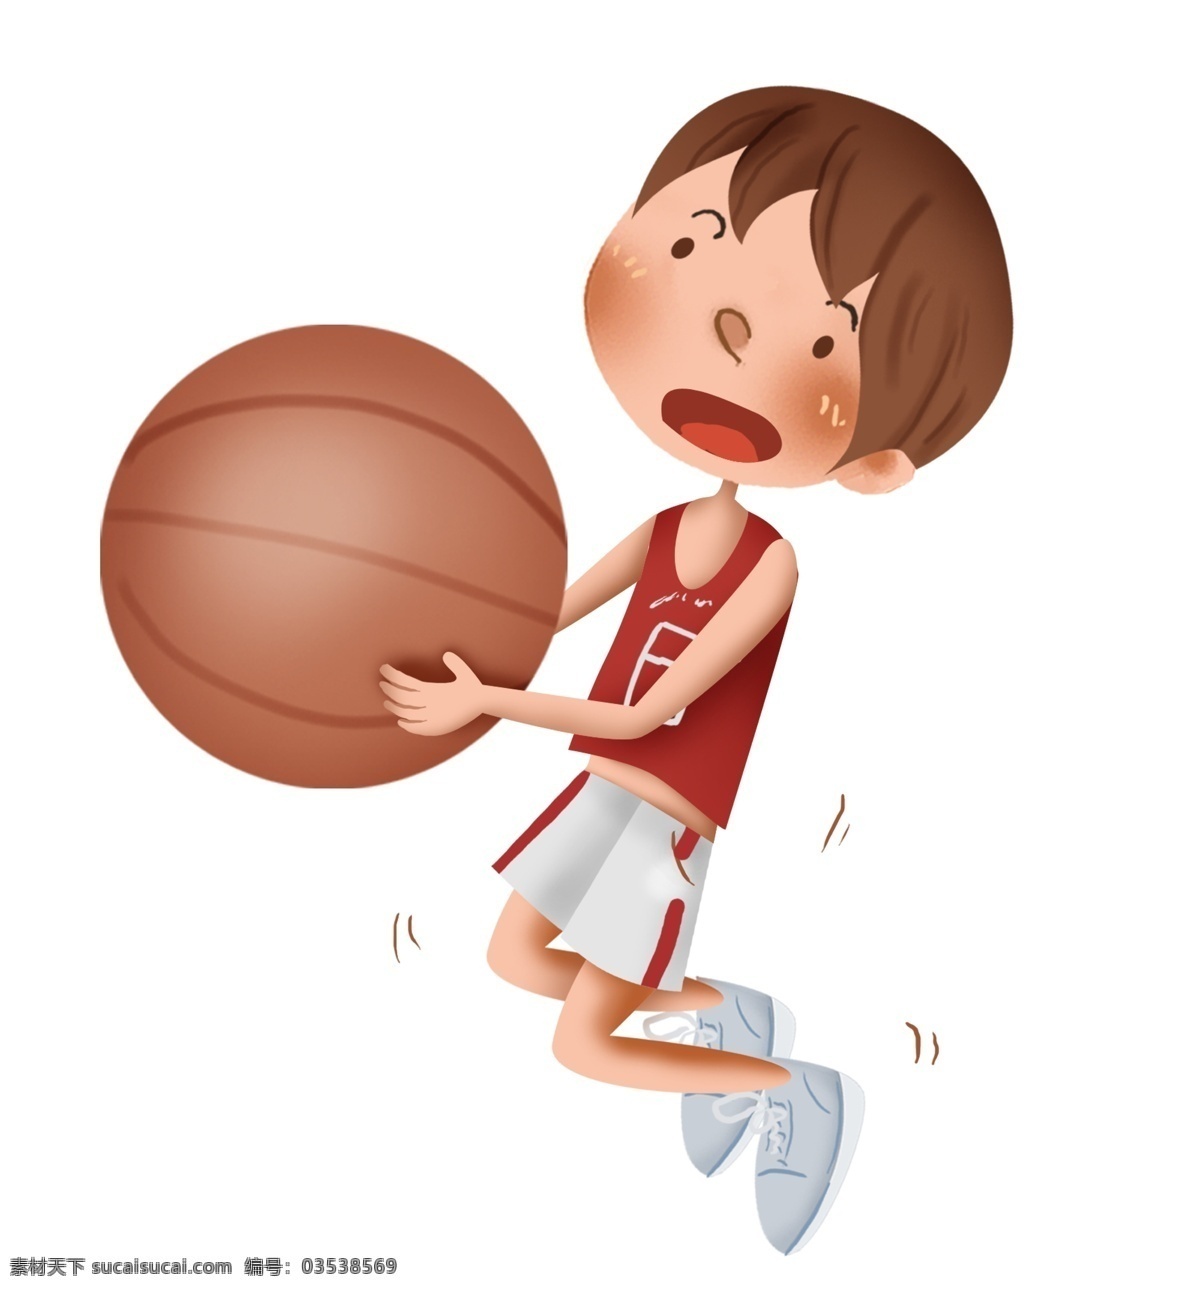 学习 篮球 男孩 运动 学习篮球 投篮 体育 运动会 青少年 课外活动 篮球考试 校园篮球赛 篮球比赛